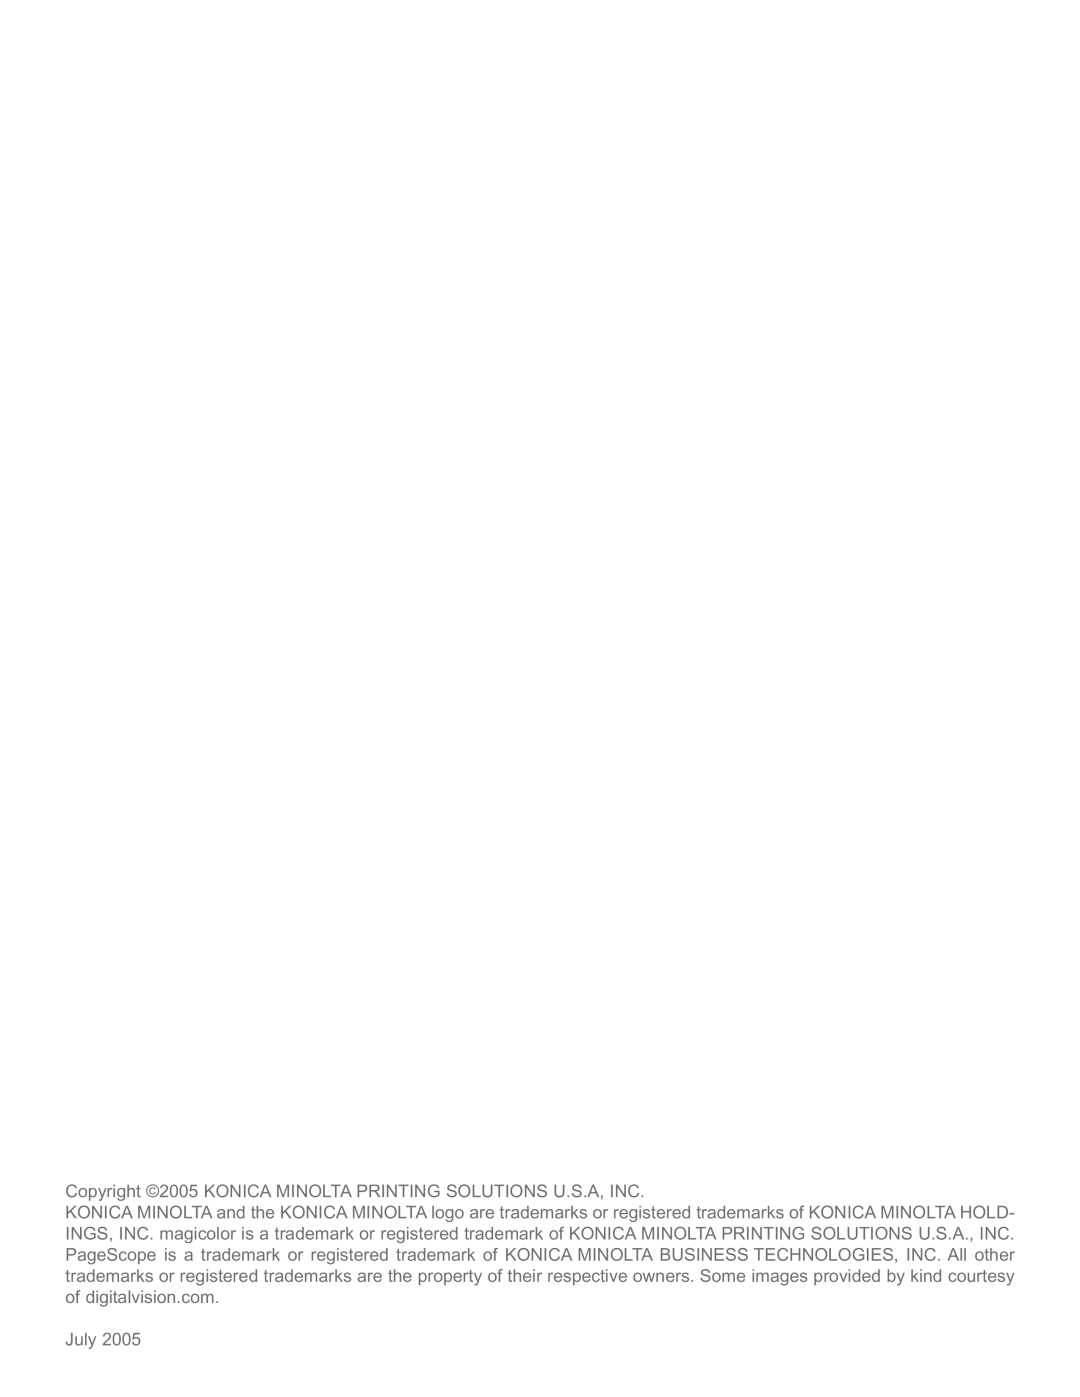 Konica Minolta 5440 DL manual July 